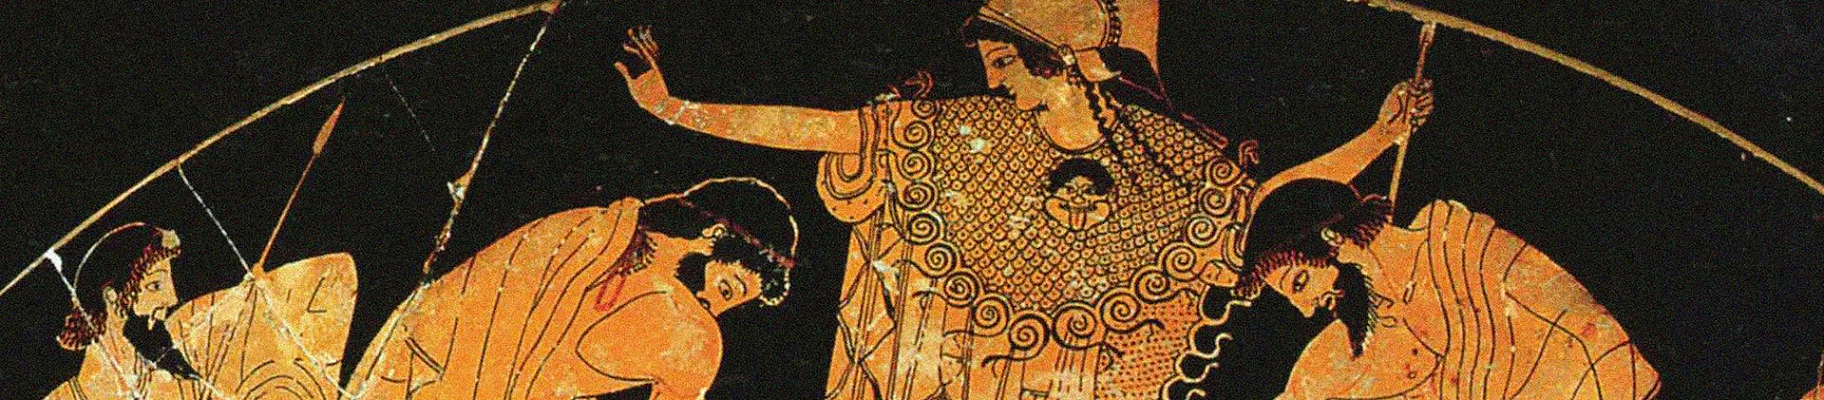 Мудрость греков и ее родство с духовными истинами Востока